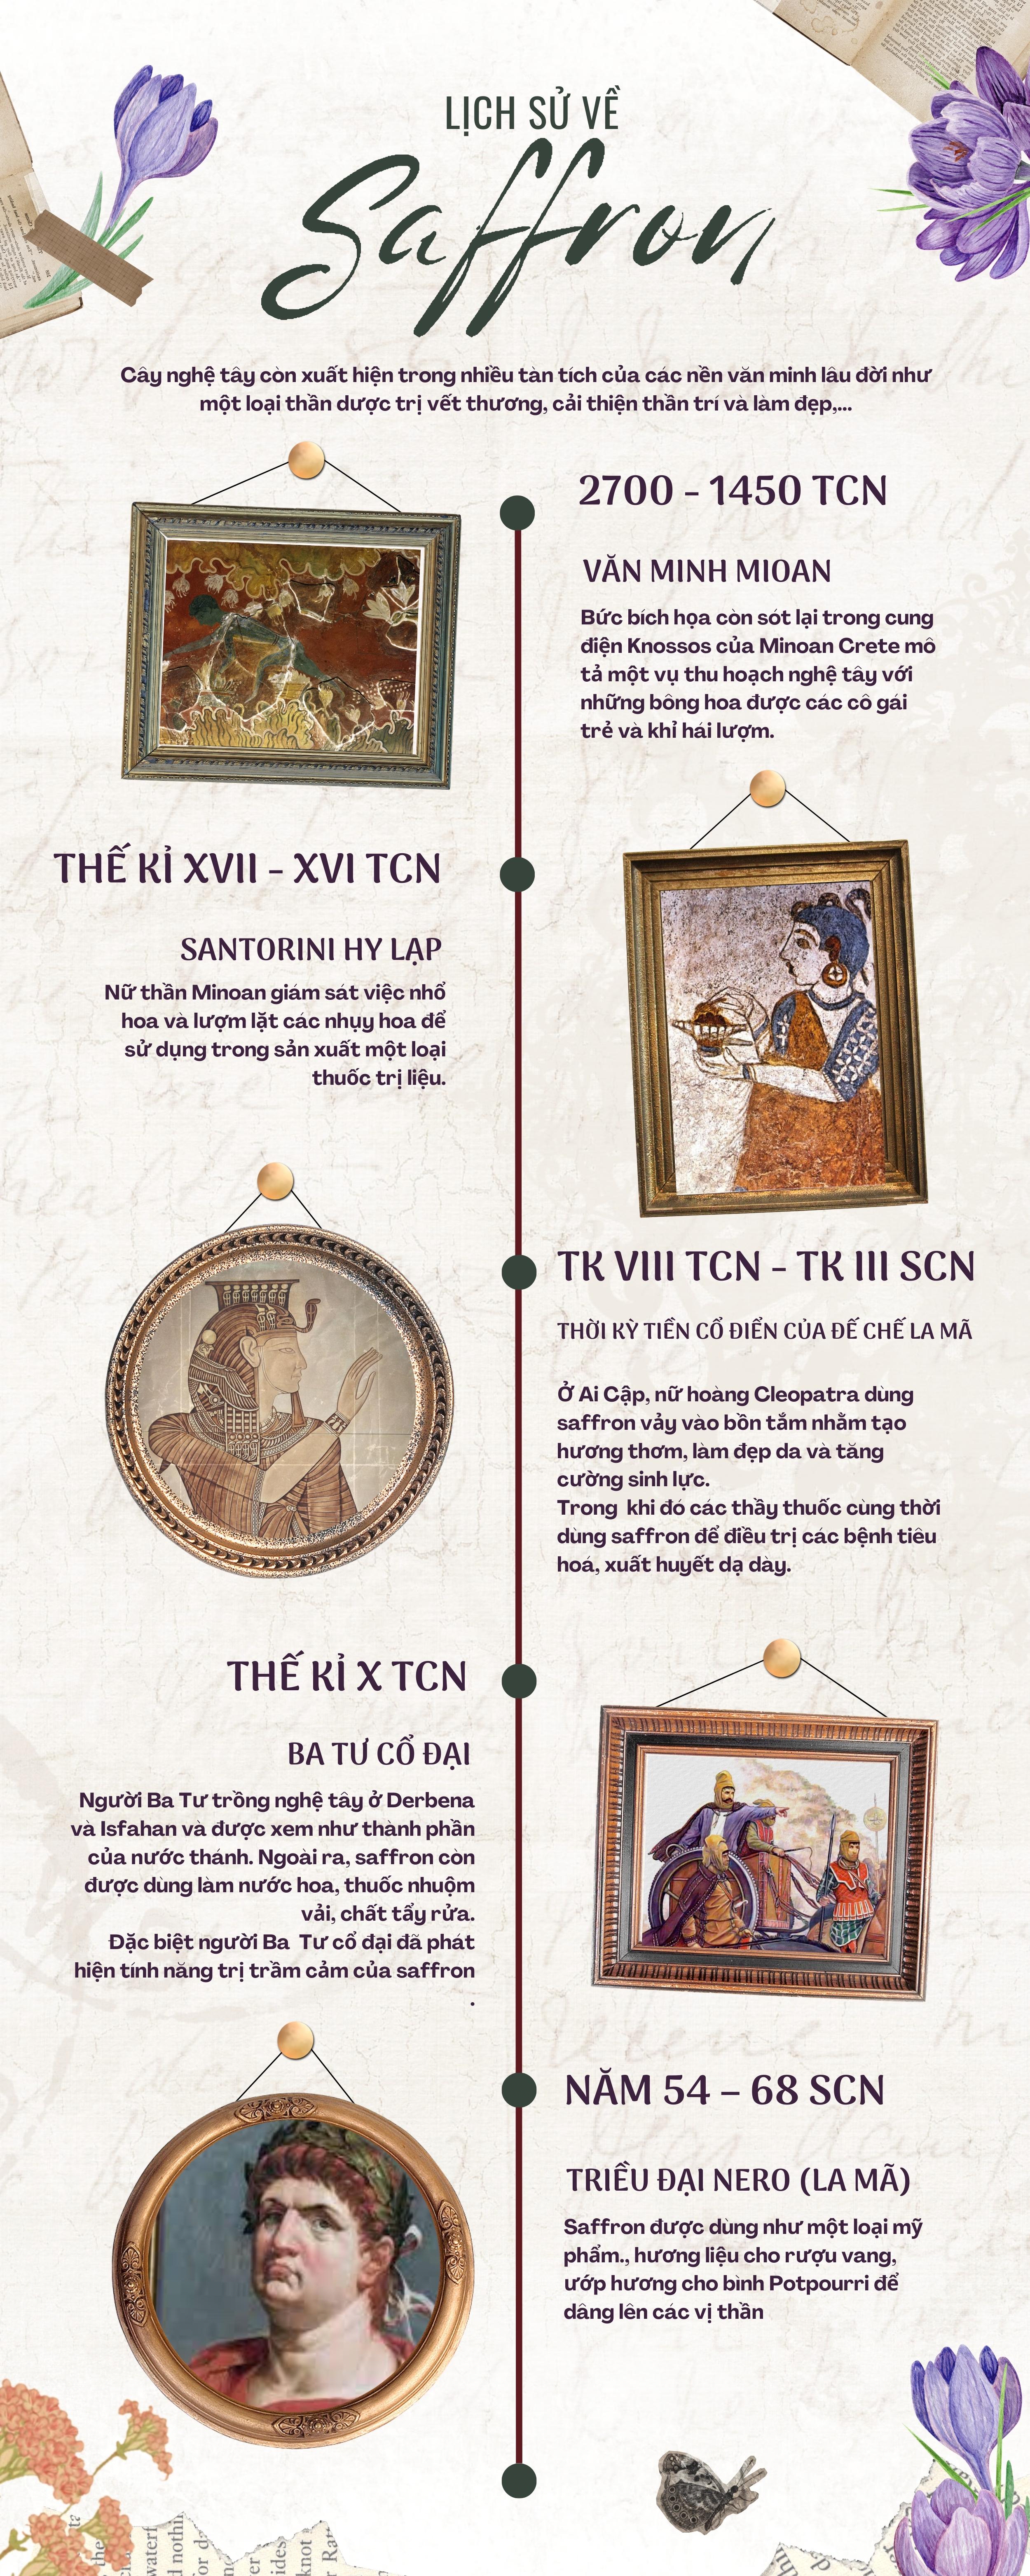 C&ocirc;ng dụng của Saffron qua từng giai đoạn lịch sử